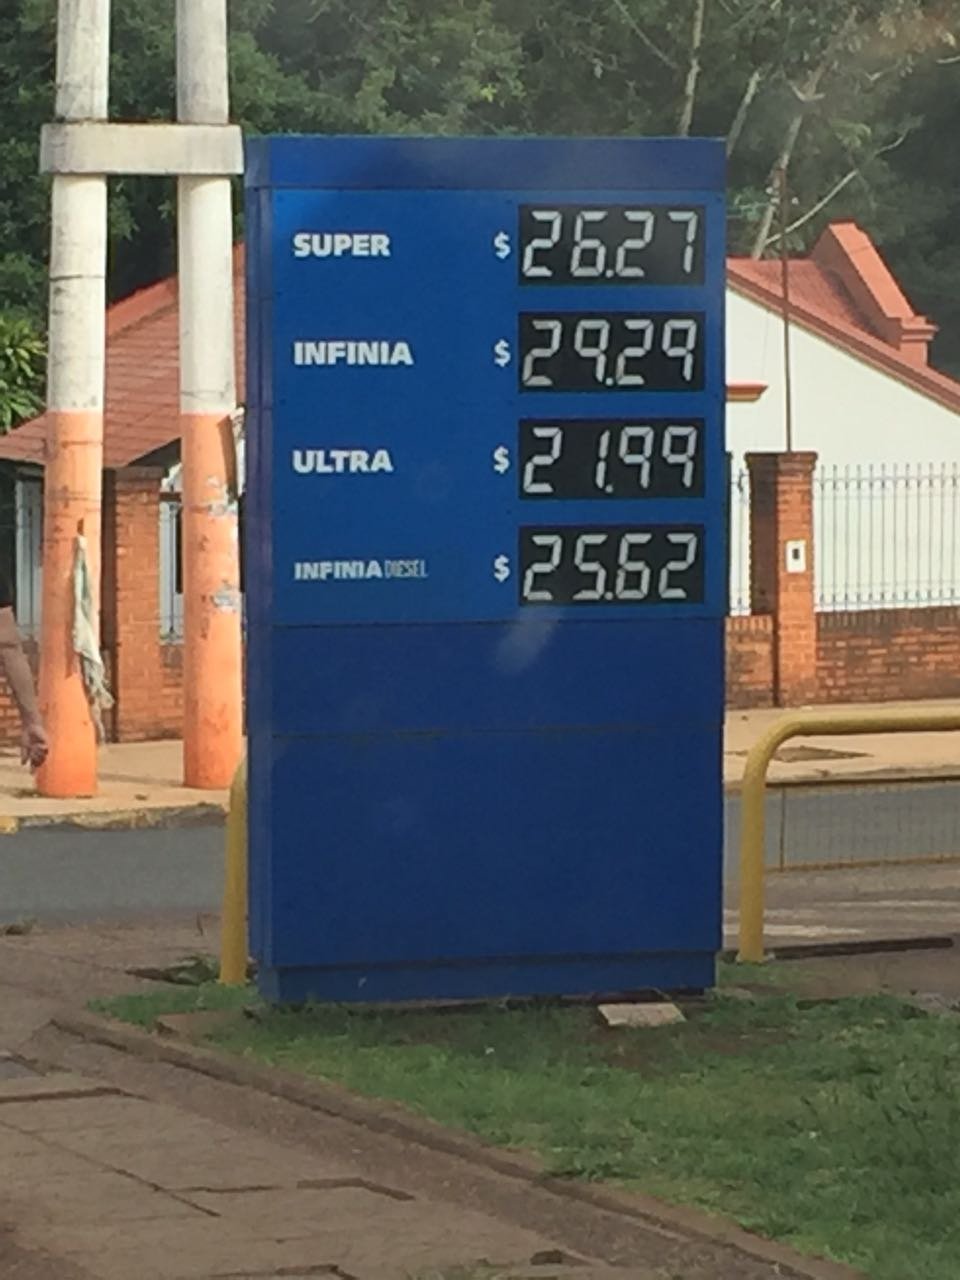 La Infinia en Iguazú está casi a 30 pesos. 